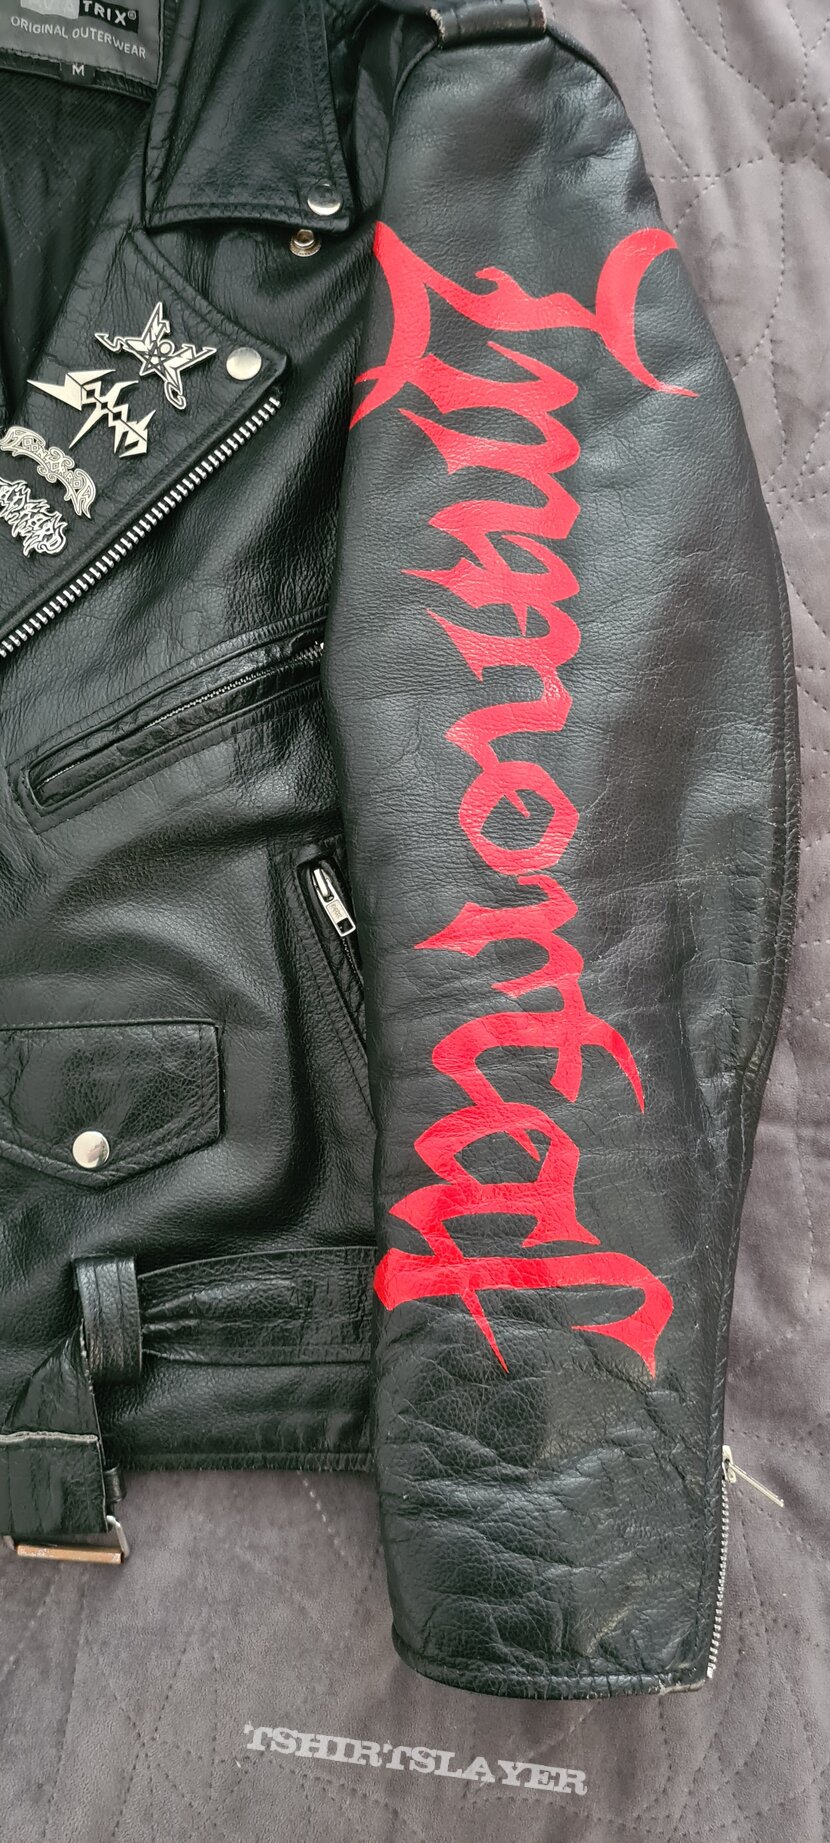 Bathory Leather jacket